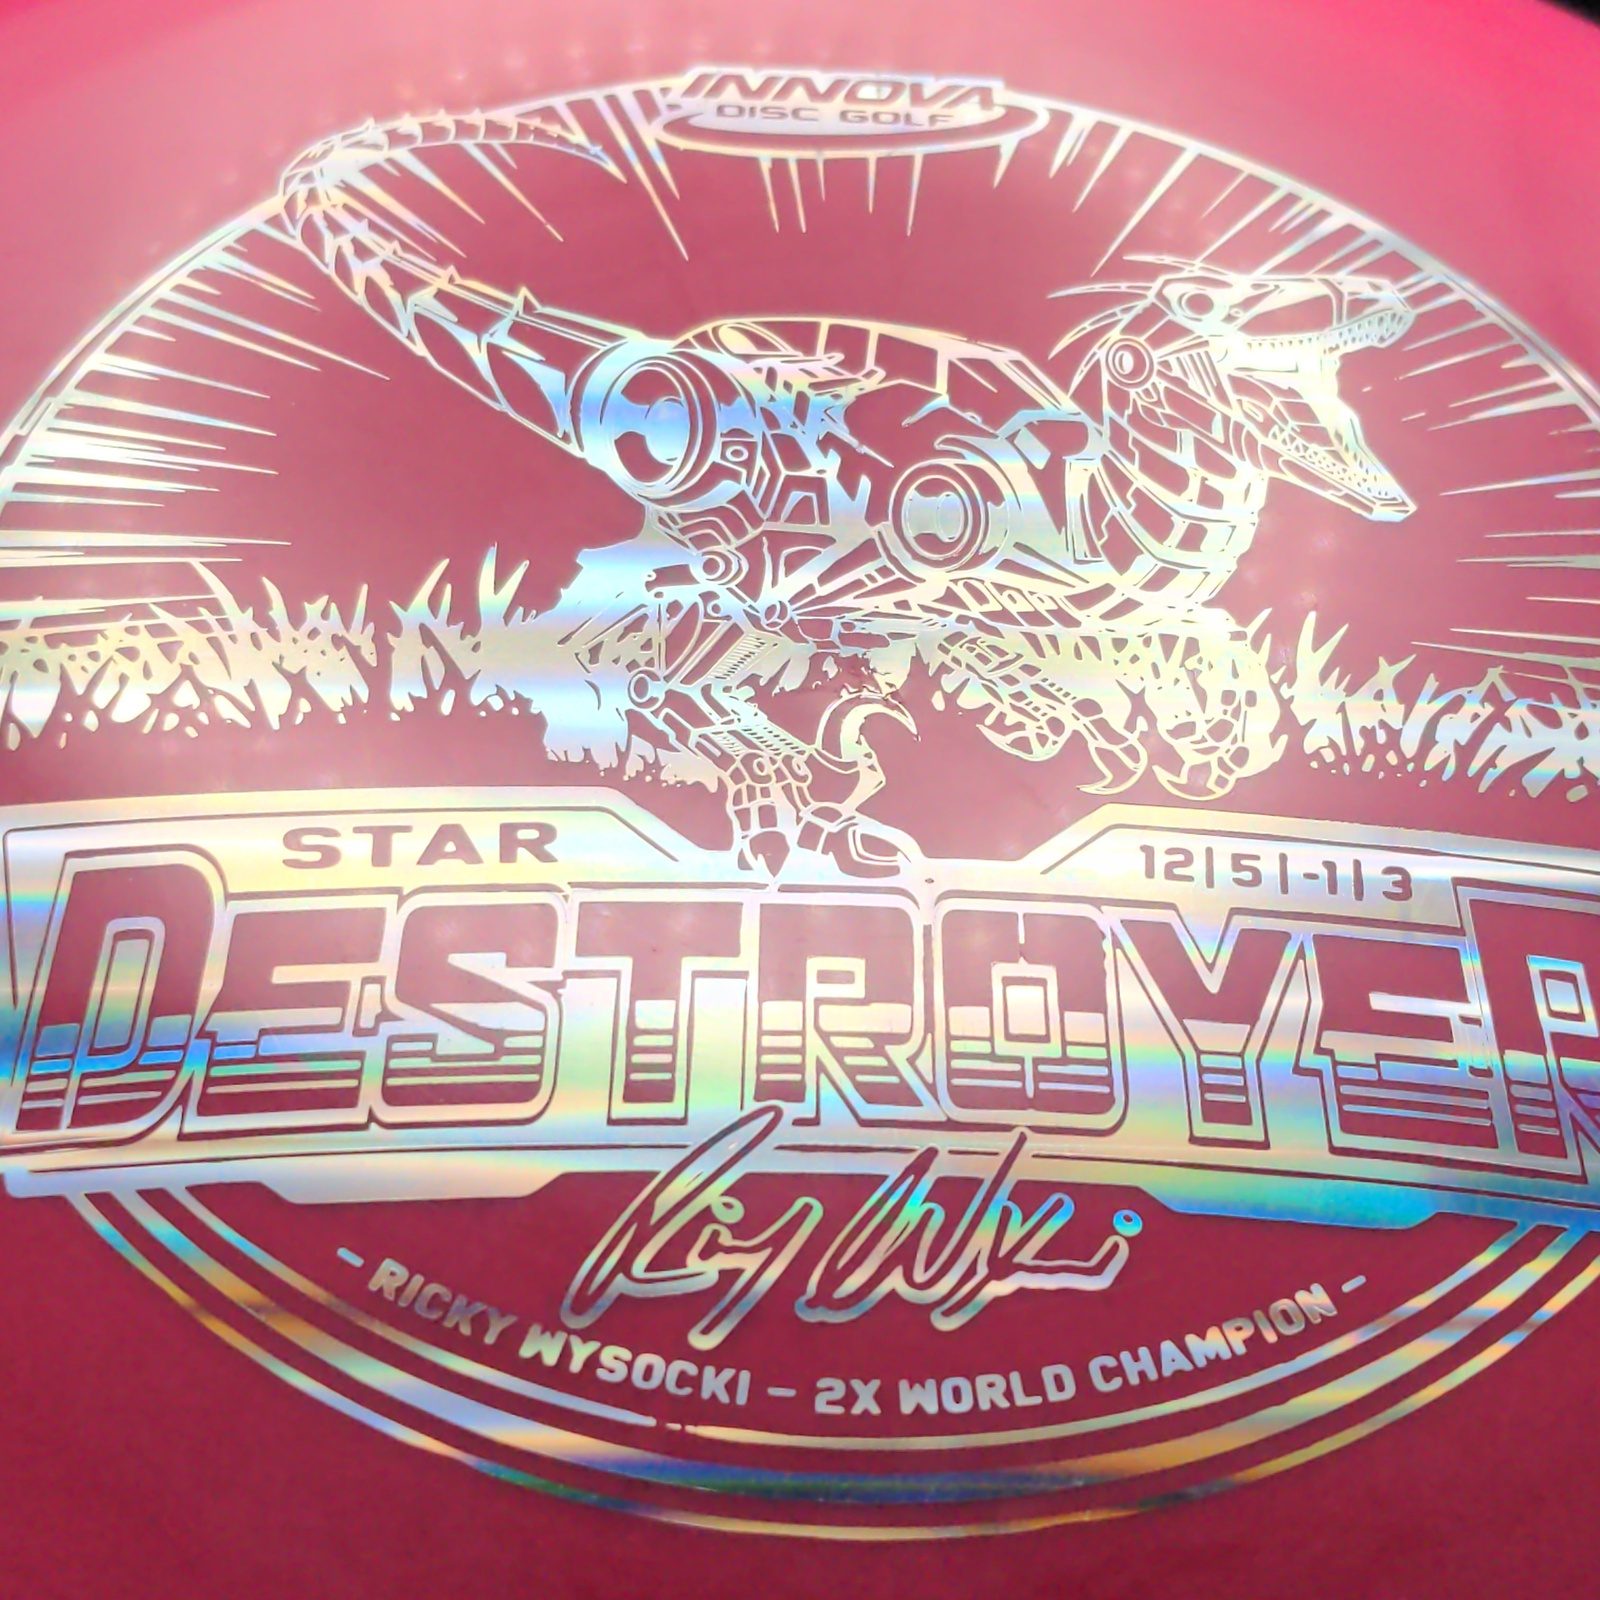 Swirly Star Destroyer - Ricky Wysocki XXL Raptor - OOP Rare! Innova